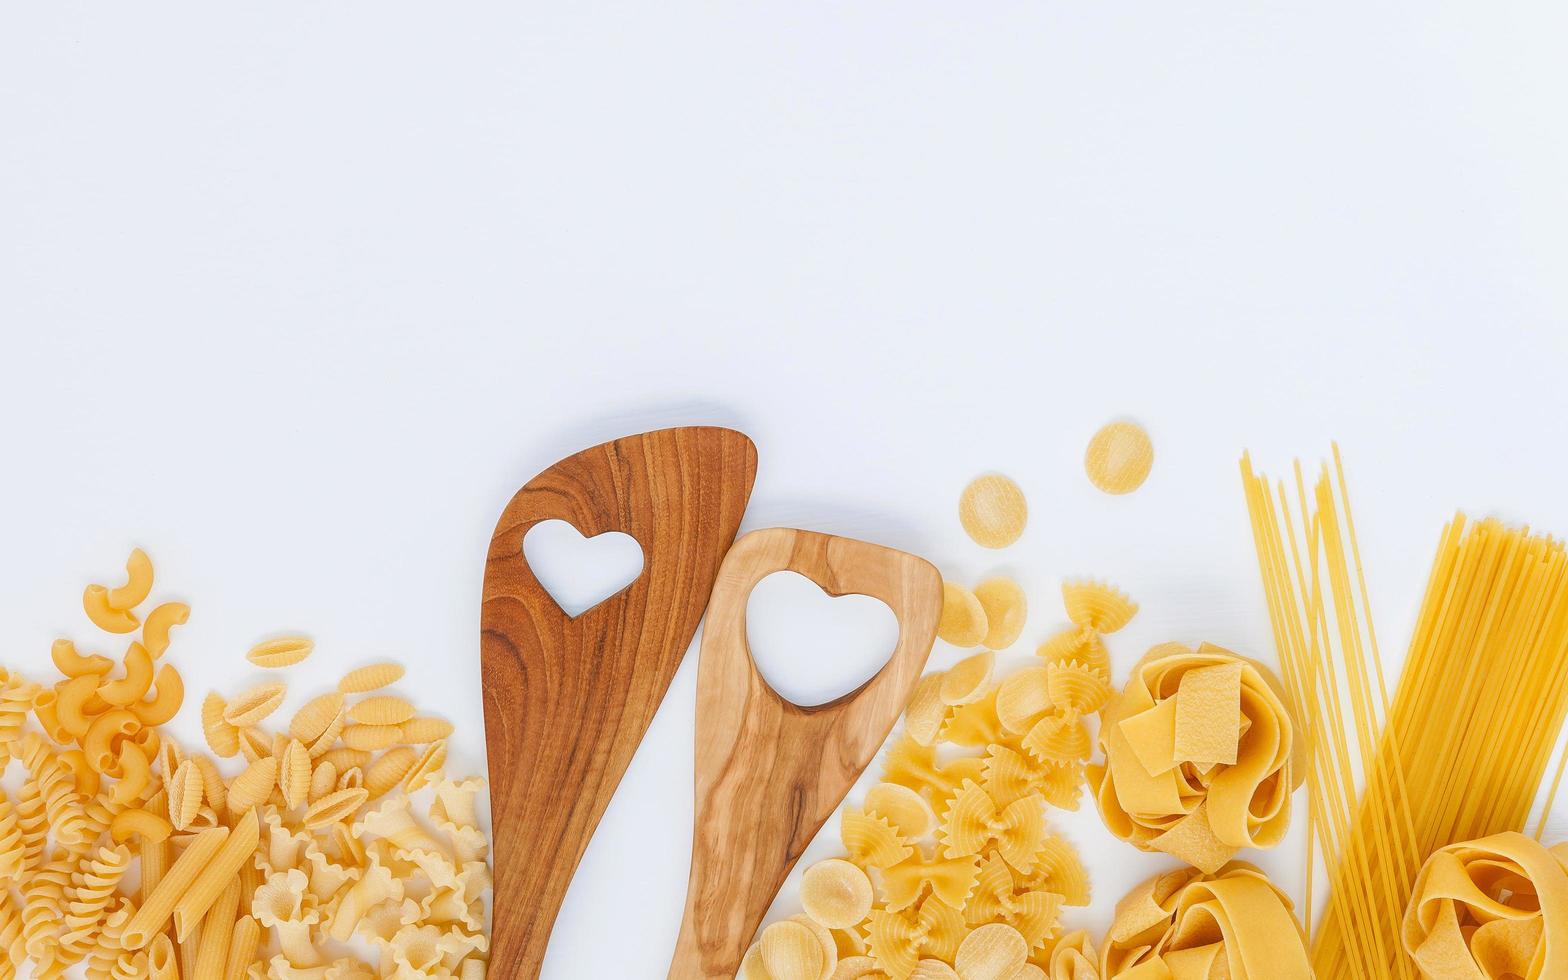 Wood utensils and pasta photo